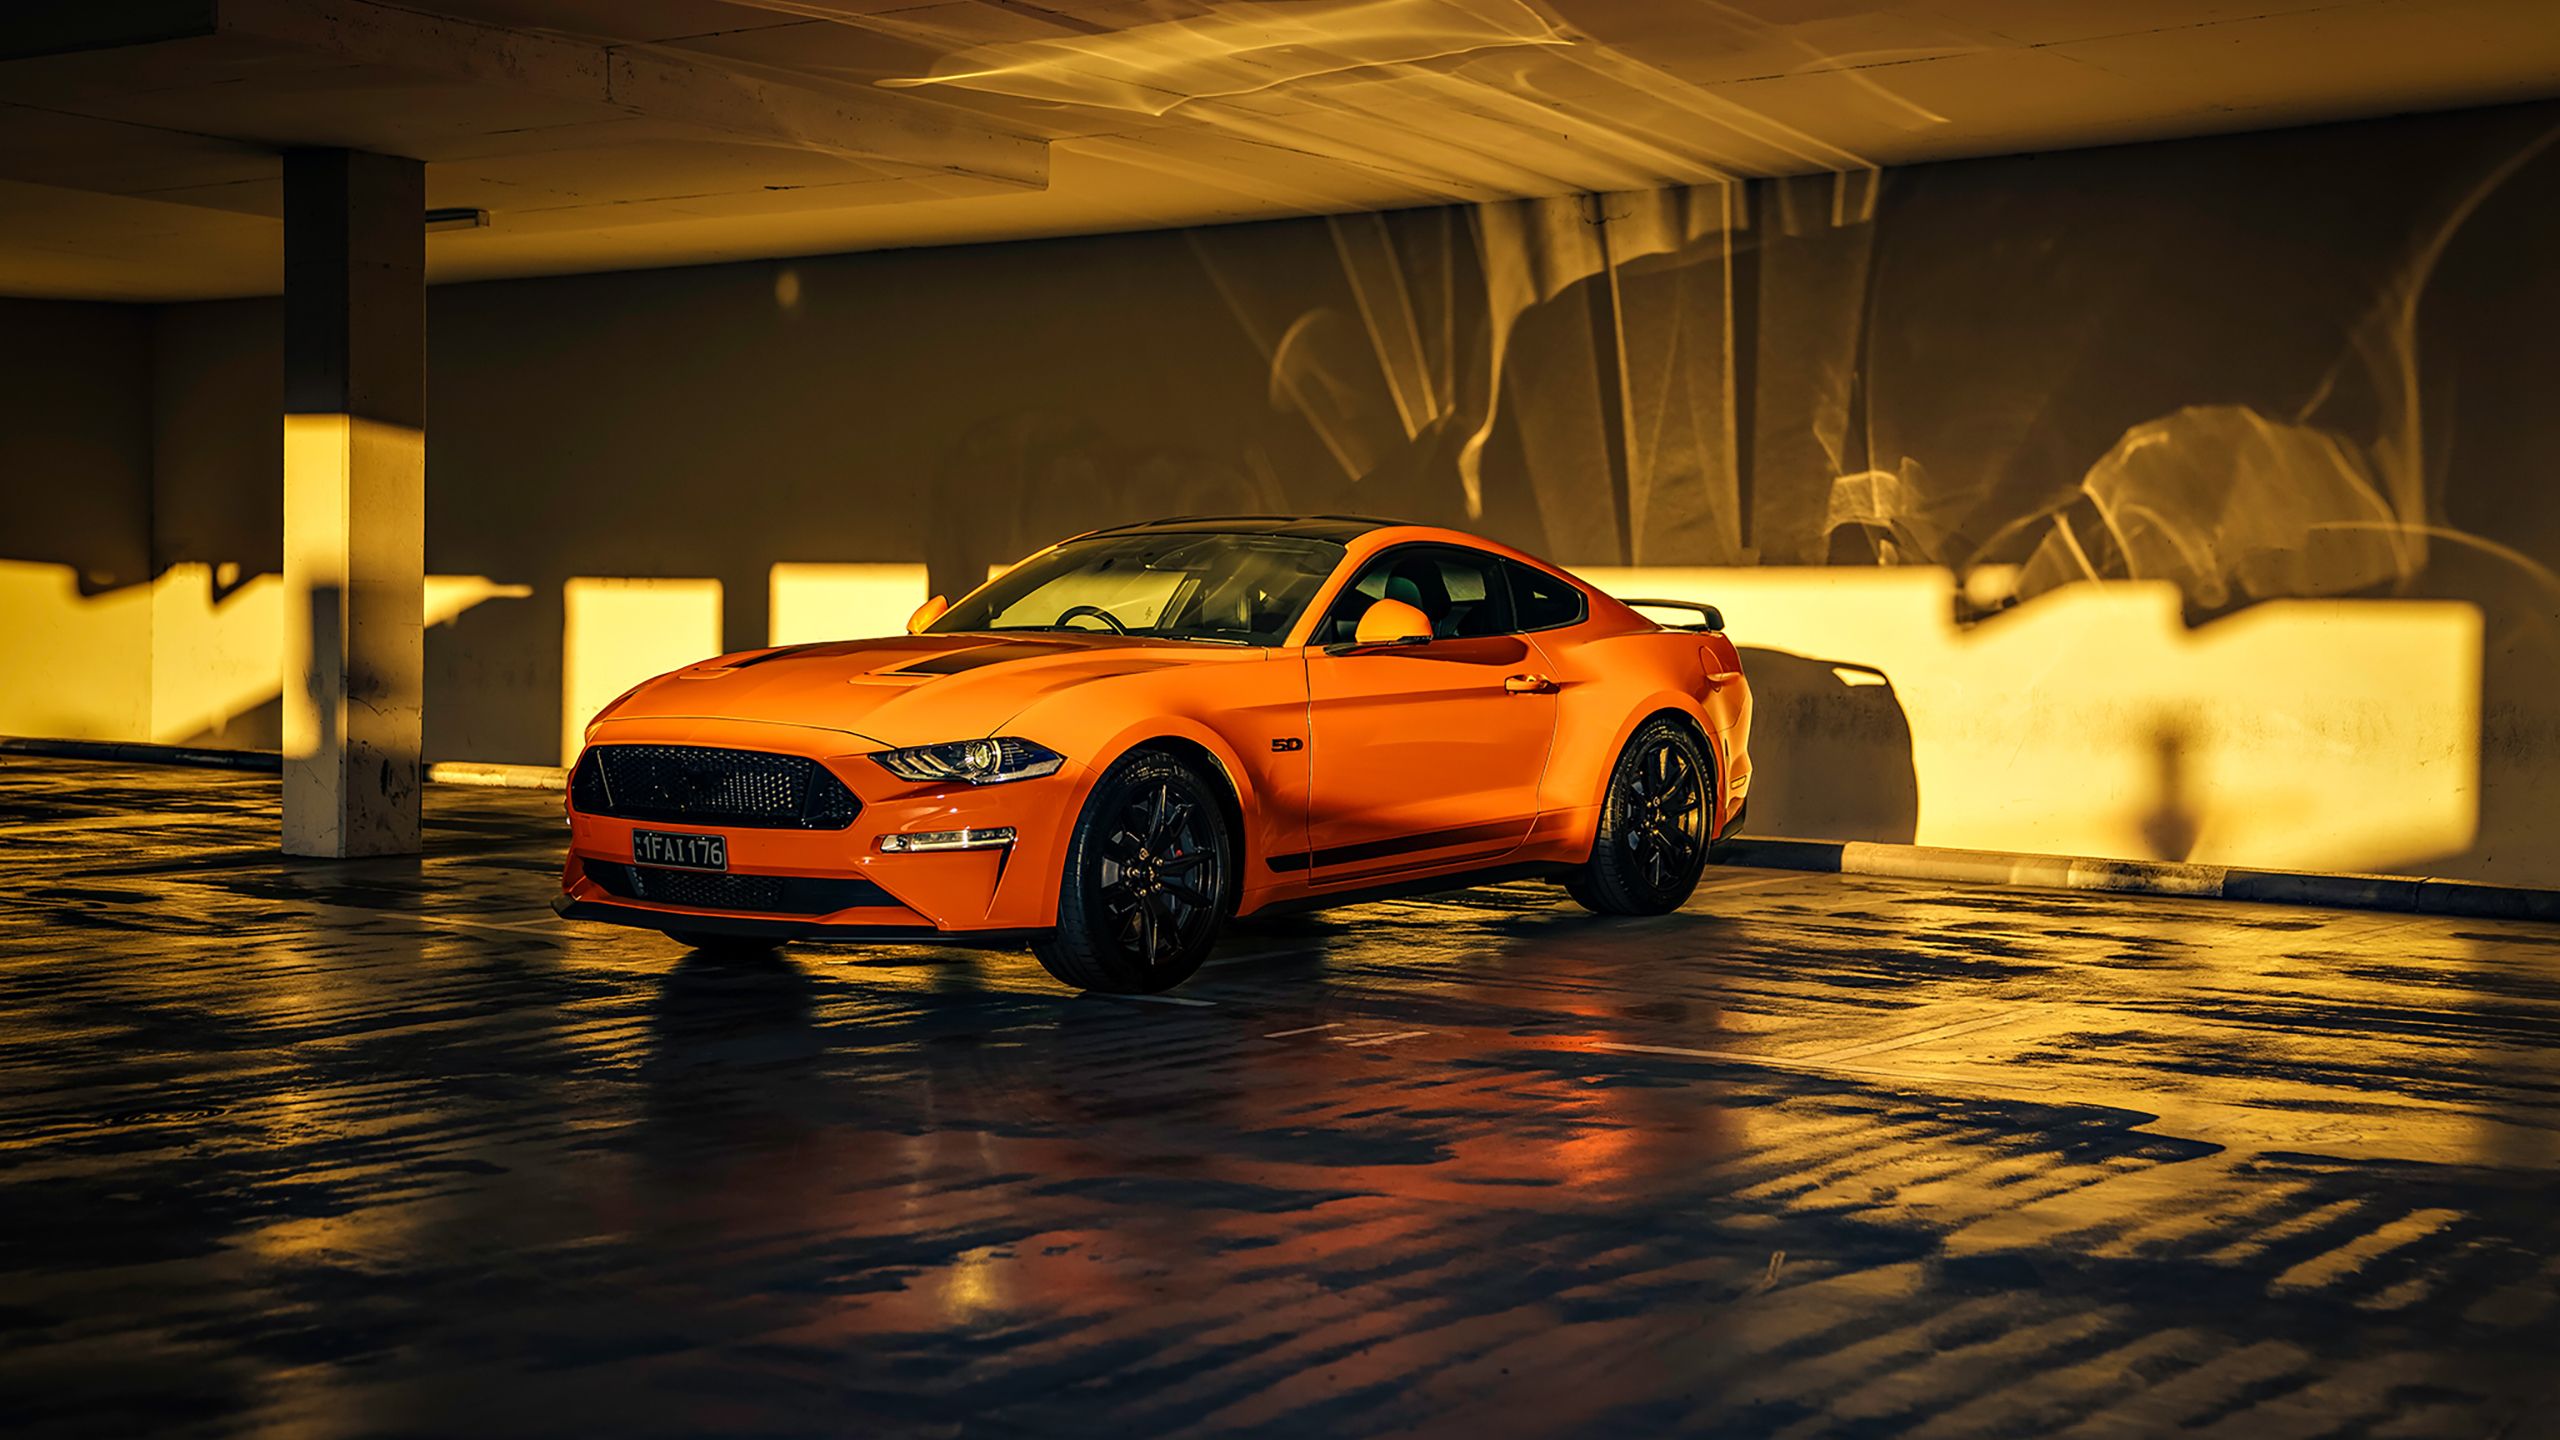 Nếu bạn yêu thích sự mạnh mẽ và đầy thể thao trong các dòng xe hơi, hãy truy cập vào hình nền Ford Mustang GT